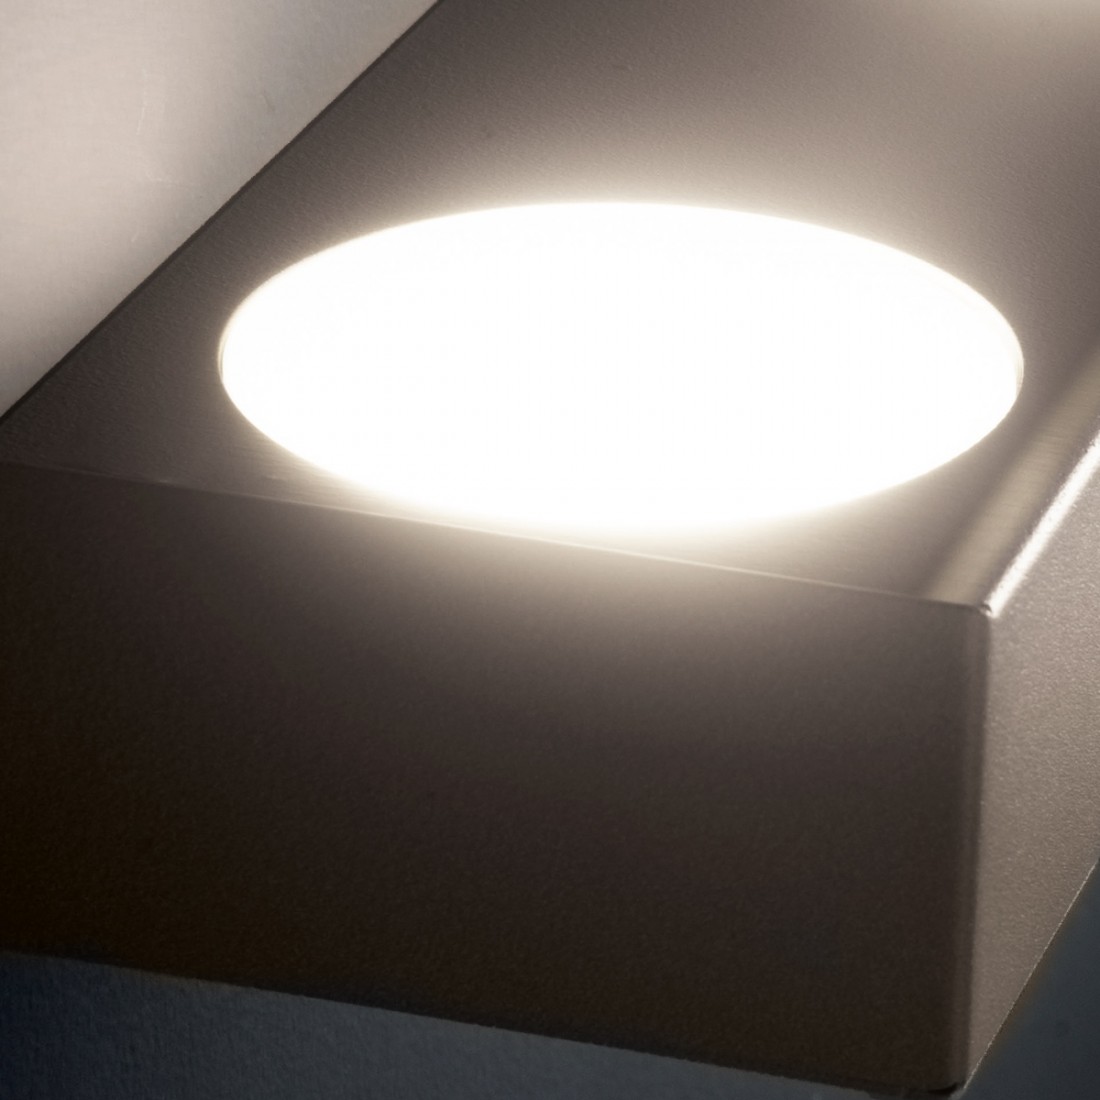 Up 2 Illuminando rechteckige GX53 LED-Glühbirnen mit einer Emission